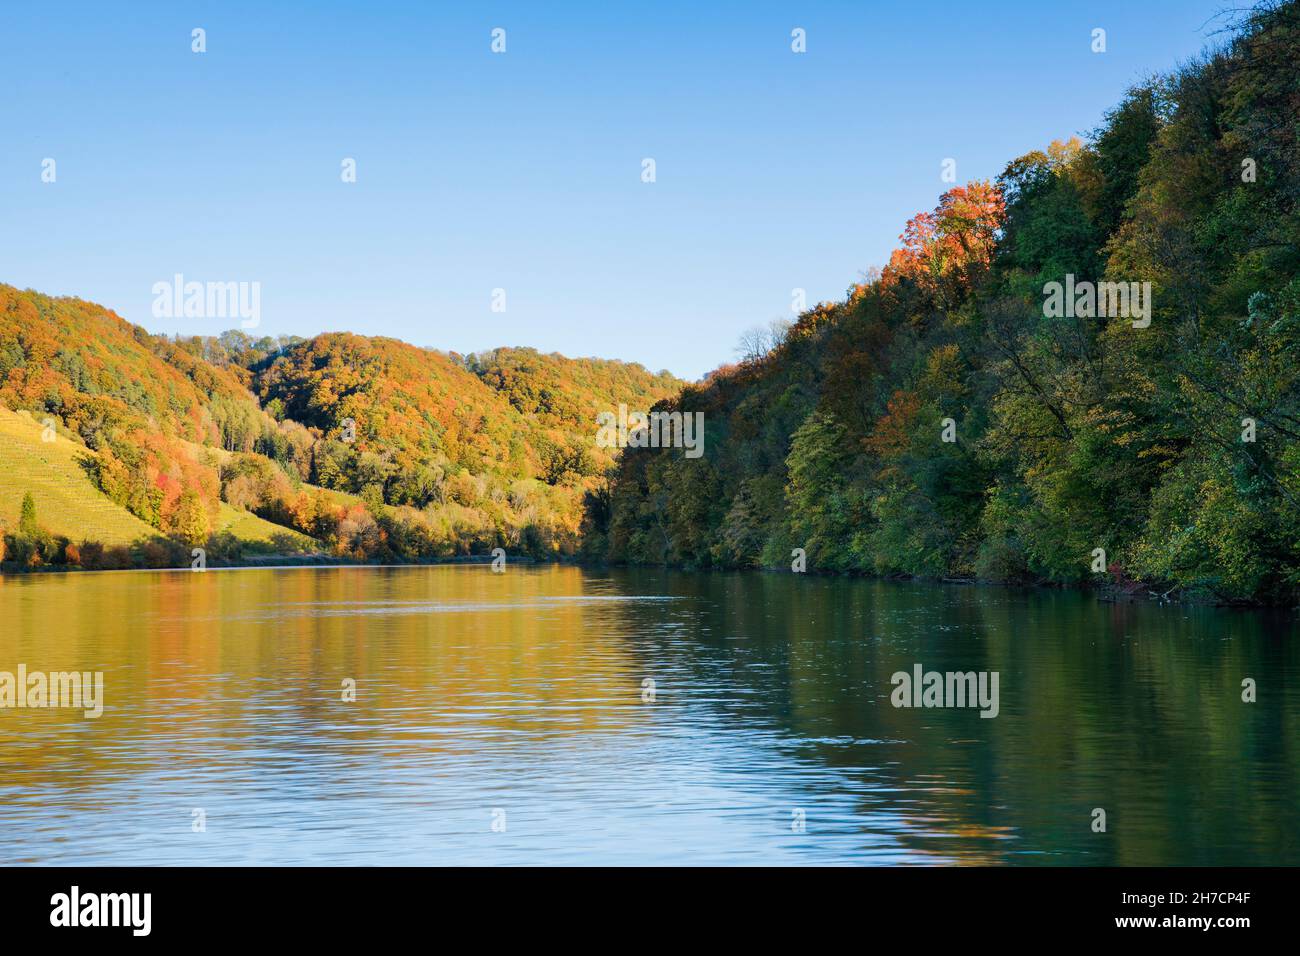 Vista desde la orilla del río cerca de Eglisa al río Rin y colorido bosque de otoño, Suiza, Eglisau Foto de stock